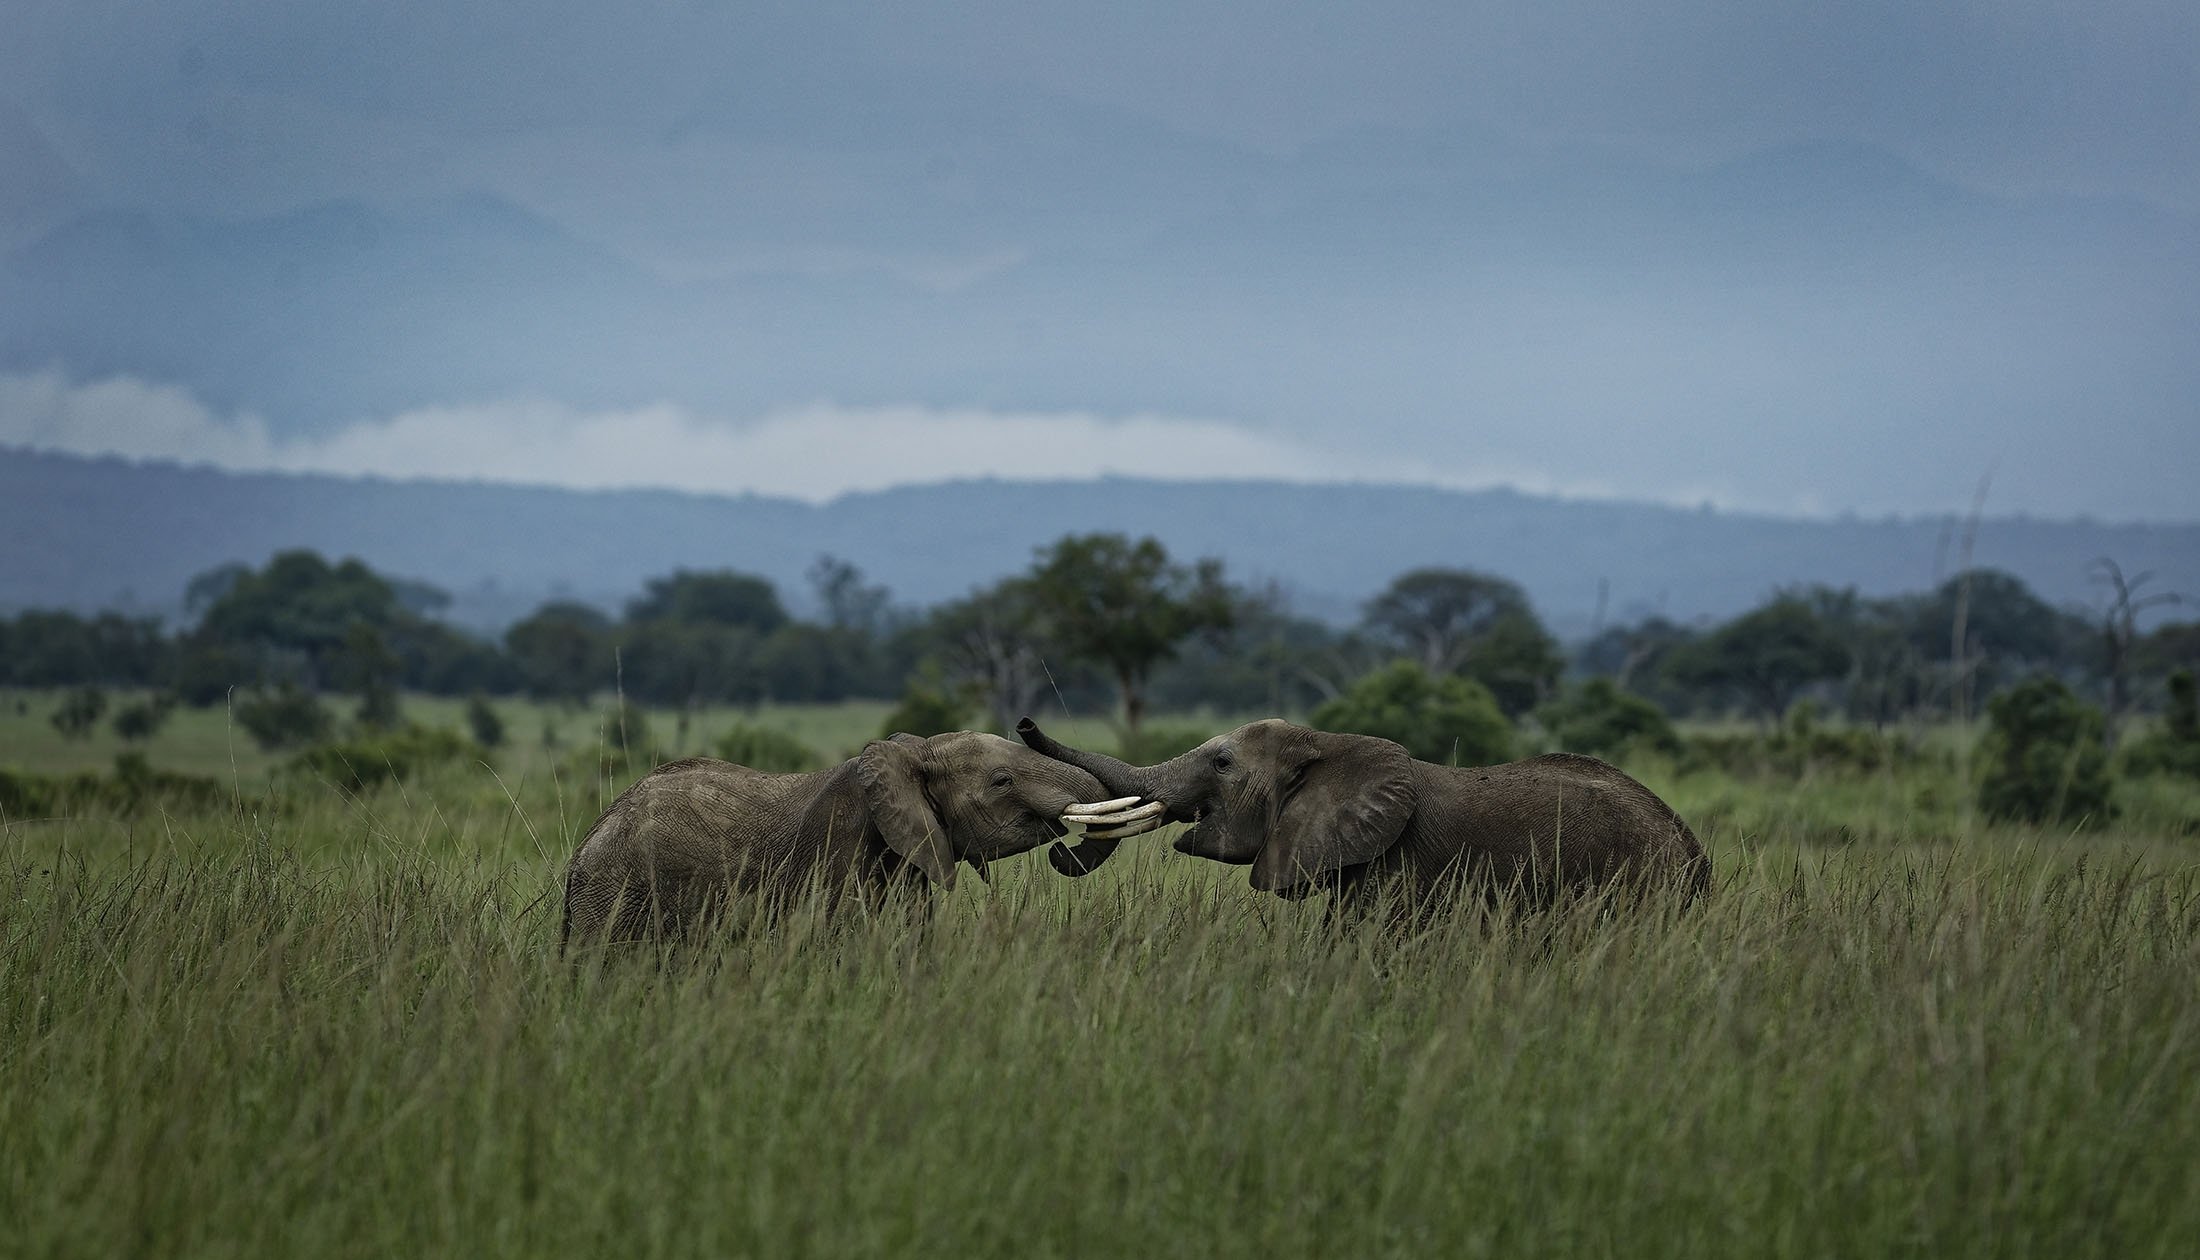 Два молодых слона играют в Национальном парке Микуми, Танзания, 20 марта 2018 года. (AP Photo)